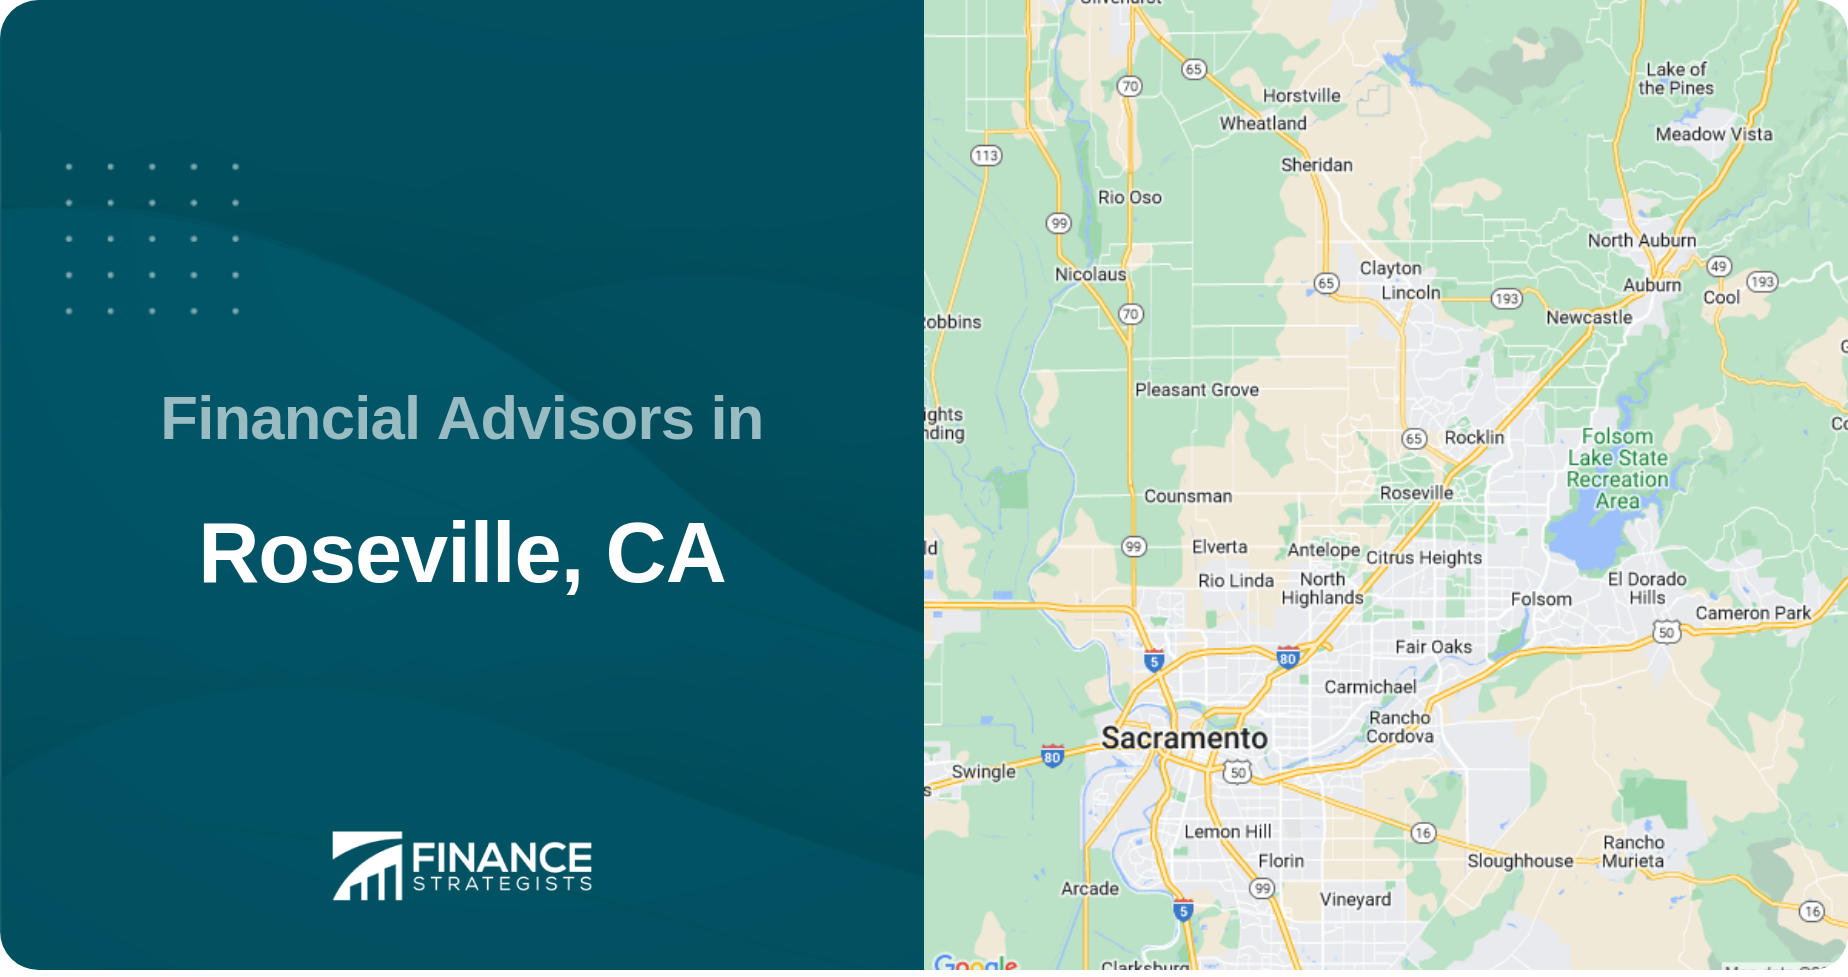 Financial Advisors in Roseville, CA